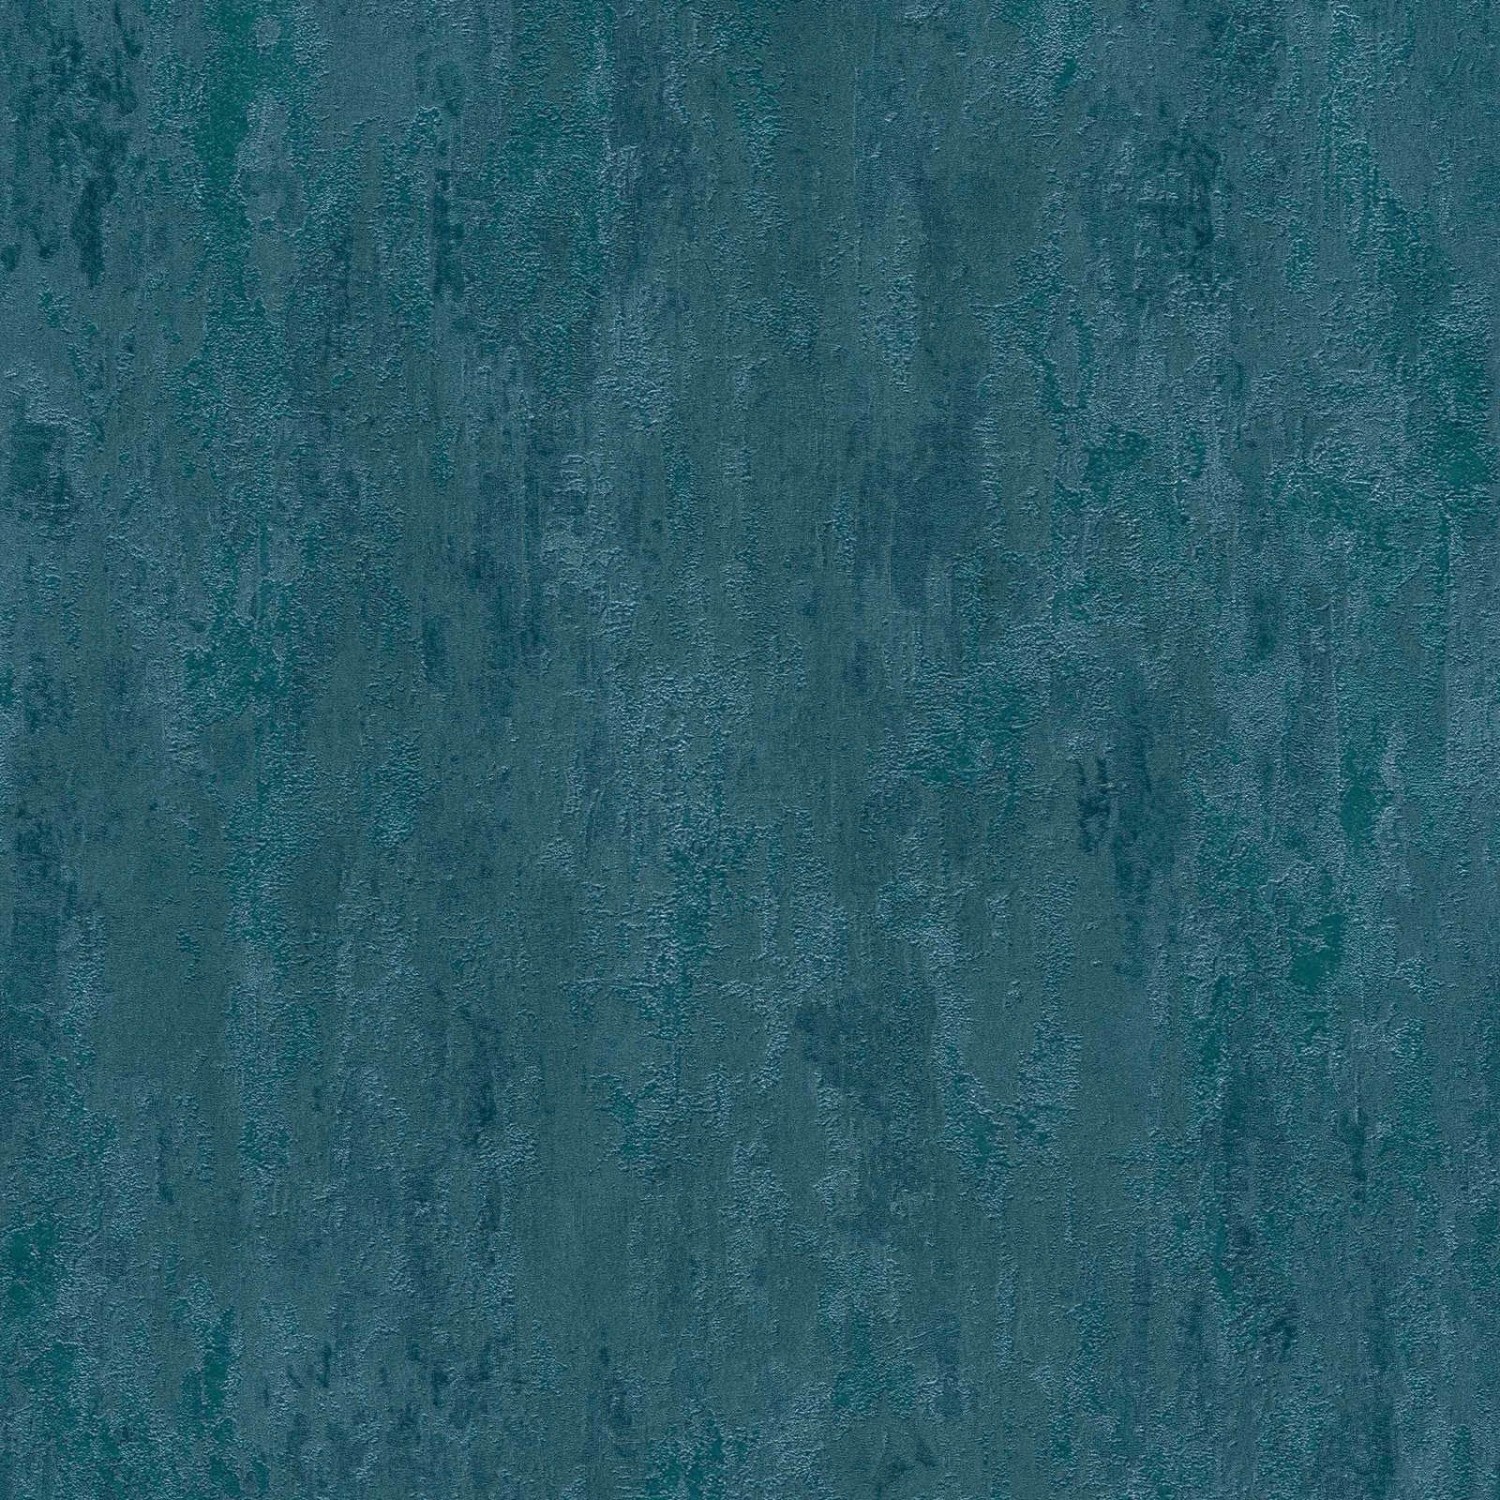 Bricoflor Petrol Tapete in Rostoptik Blaue Vliestapete mit Rost Design im industrielook Dunkelblaue Vlies Wandtapete Einfarbig für Wohnzimmer von Bricoflor